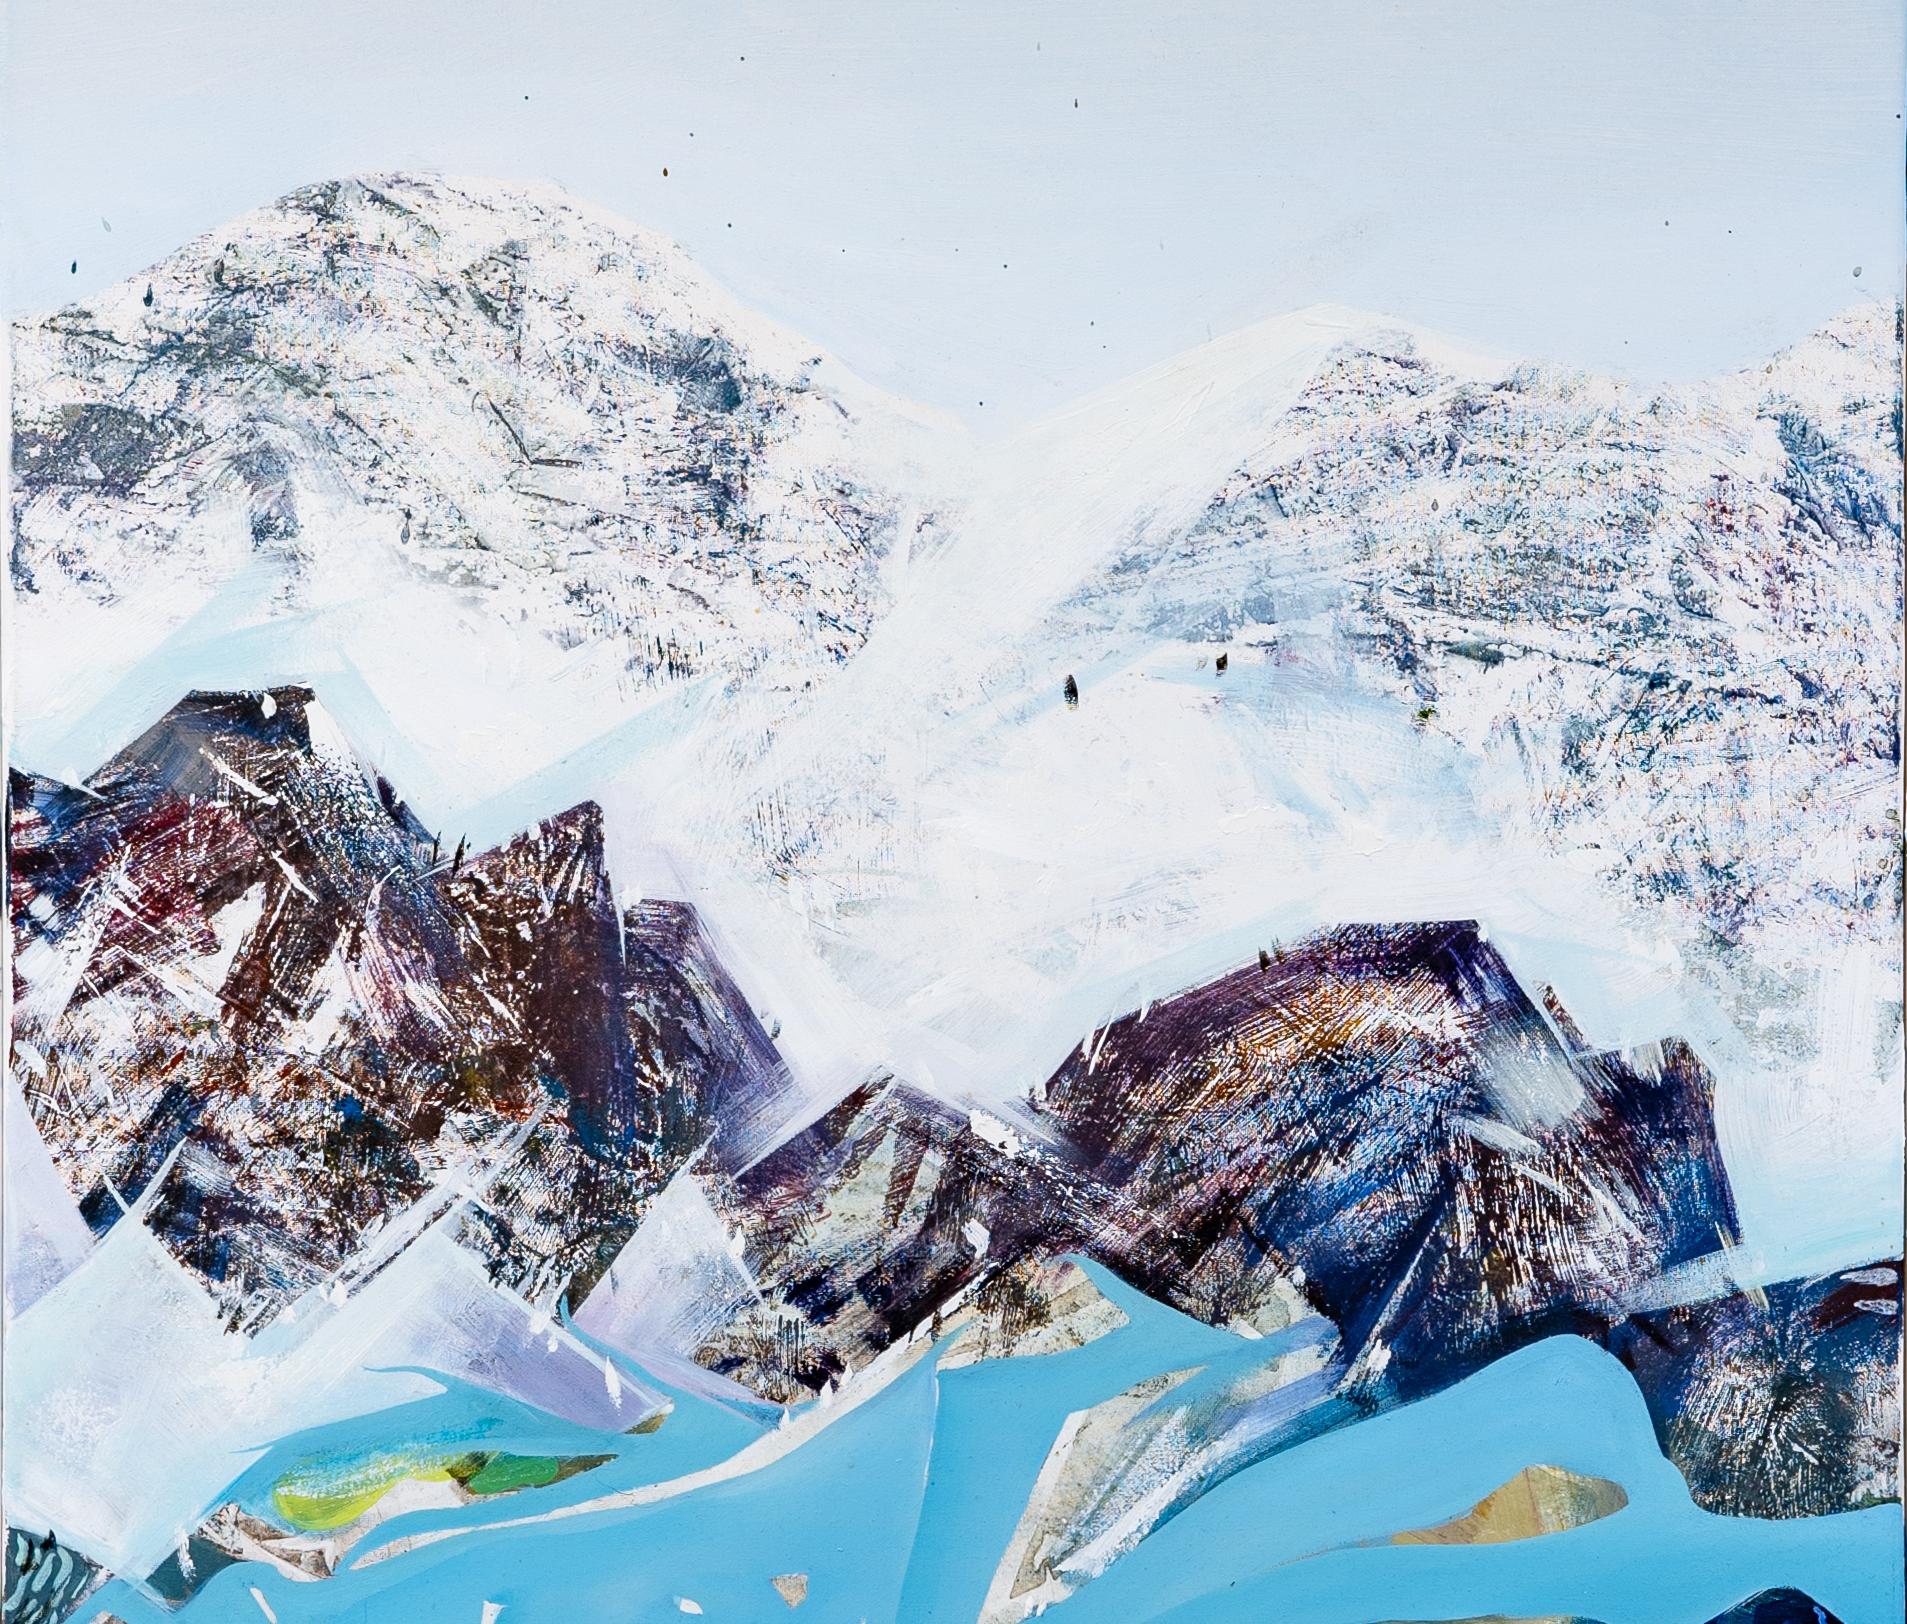 Ölgemälde des Künstlers Shuo Liu. Das Werk porträtiert die wunderschöne Landschaft des Thunersees in der Schweiz. Der Künstler hat während seines Aufenthalts in der Region viel Zeit damit verbracht, die Landschaft zu genießen. Er bewunderte die